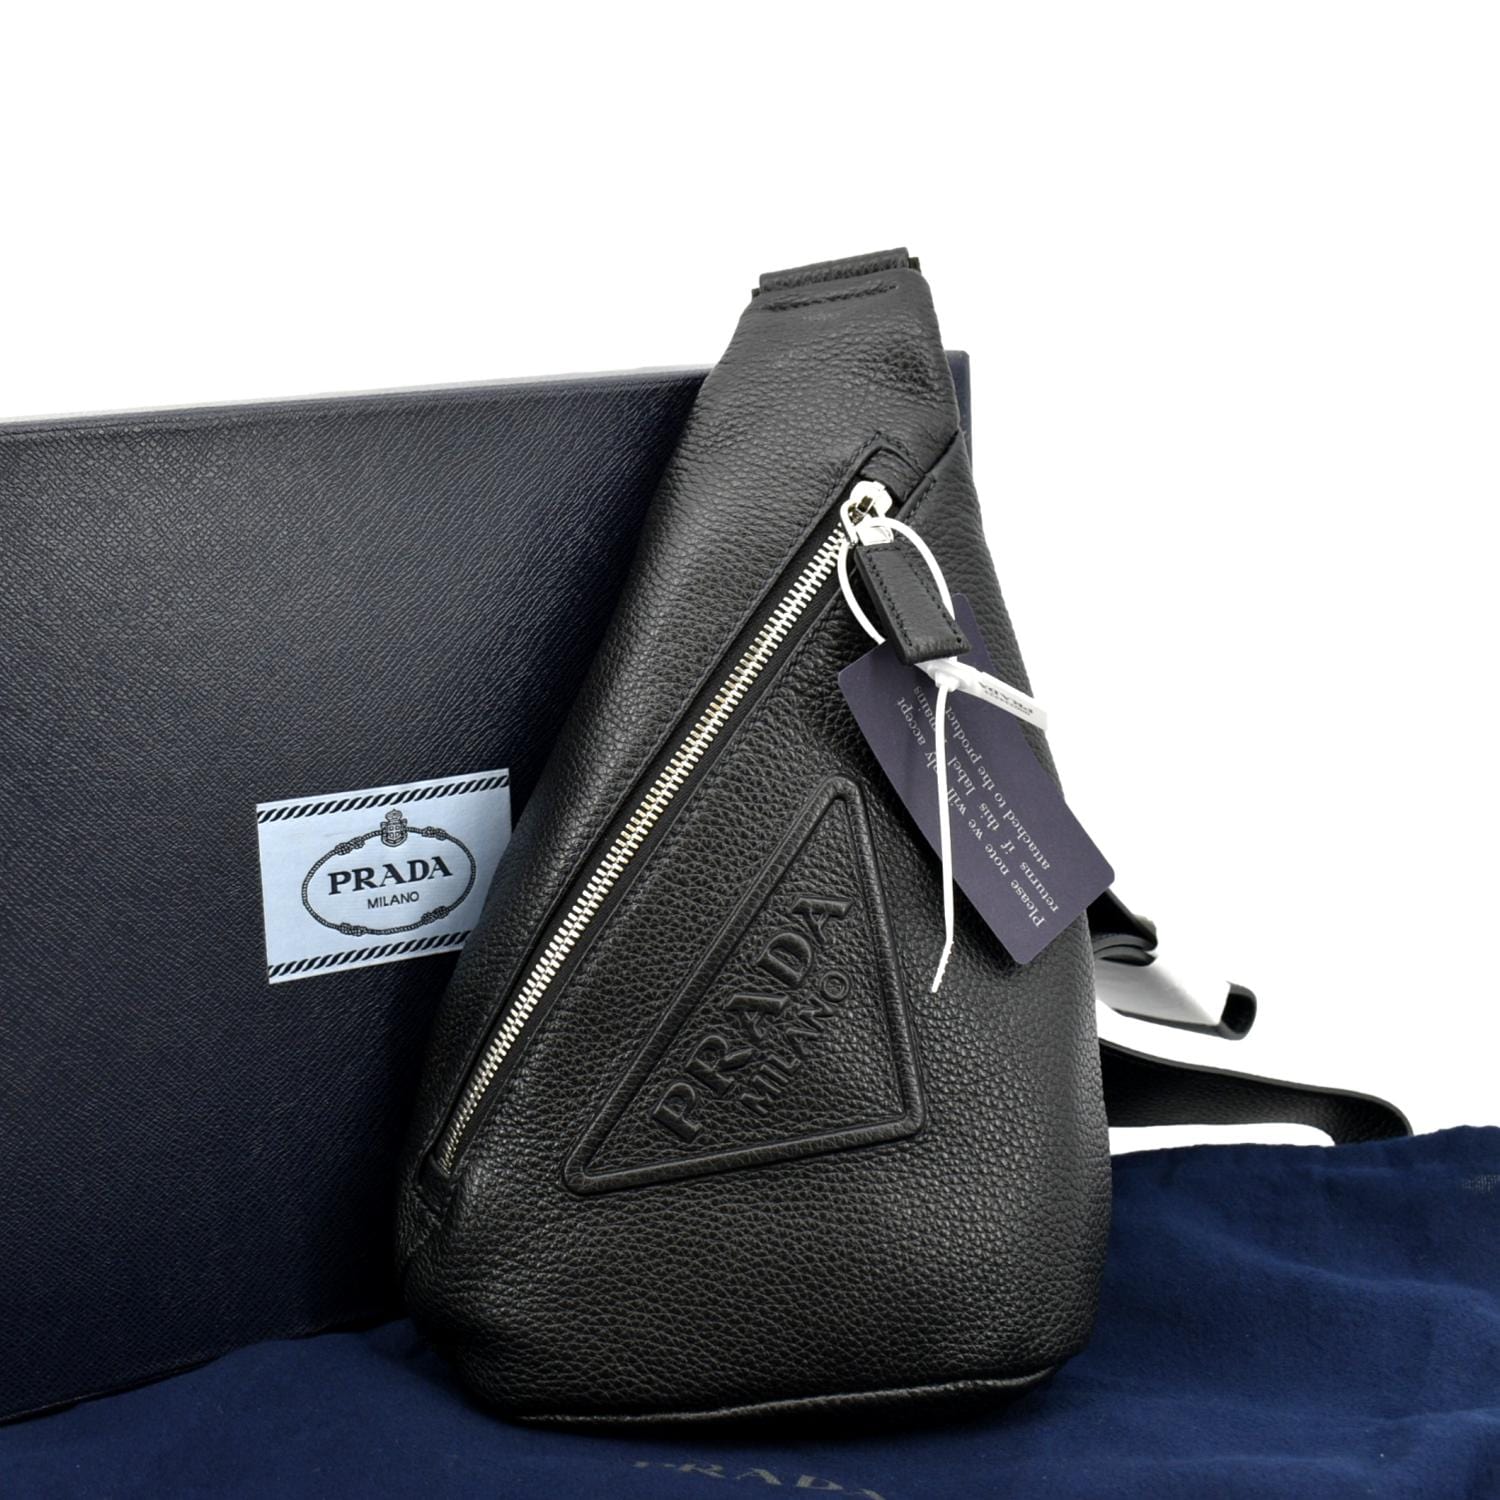 Prada Prada Triangle bag black